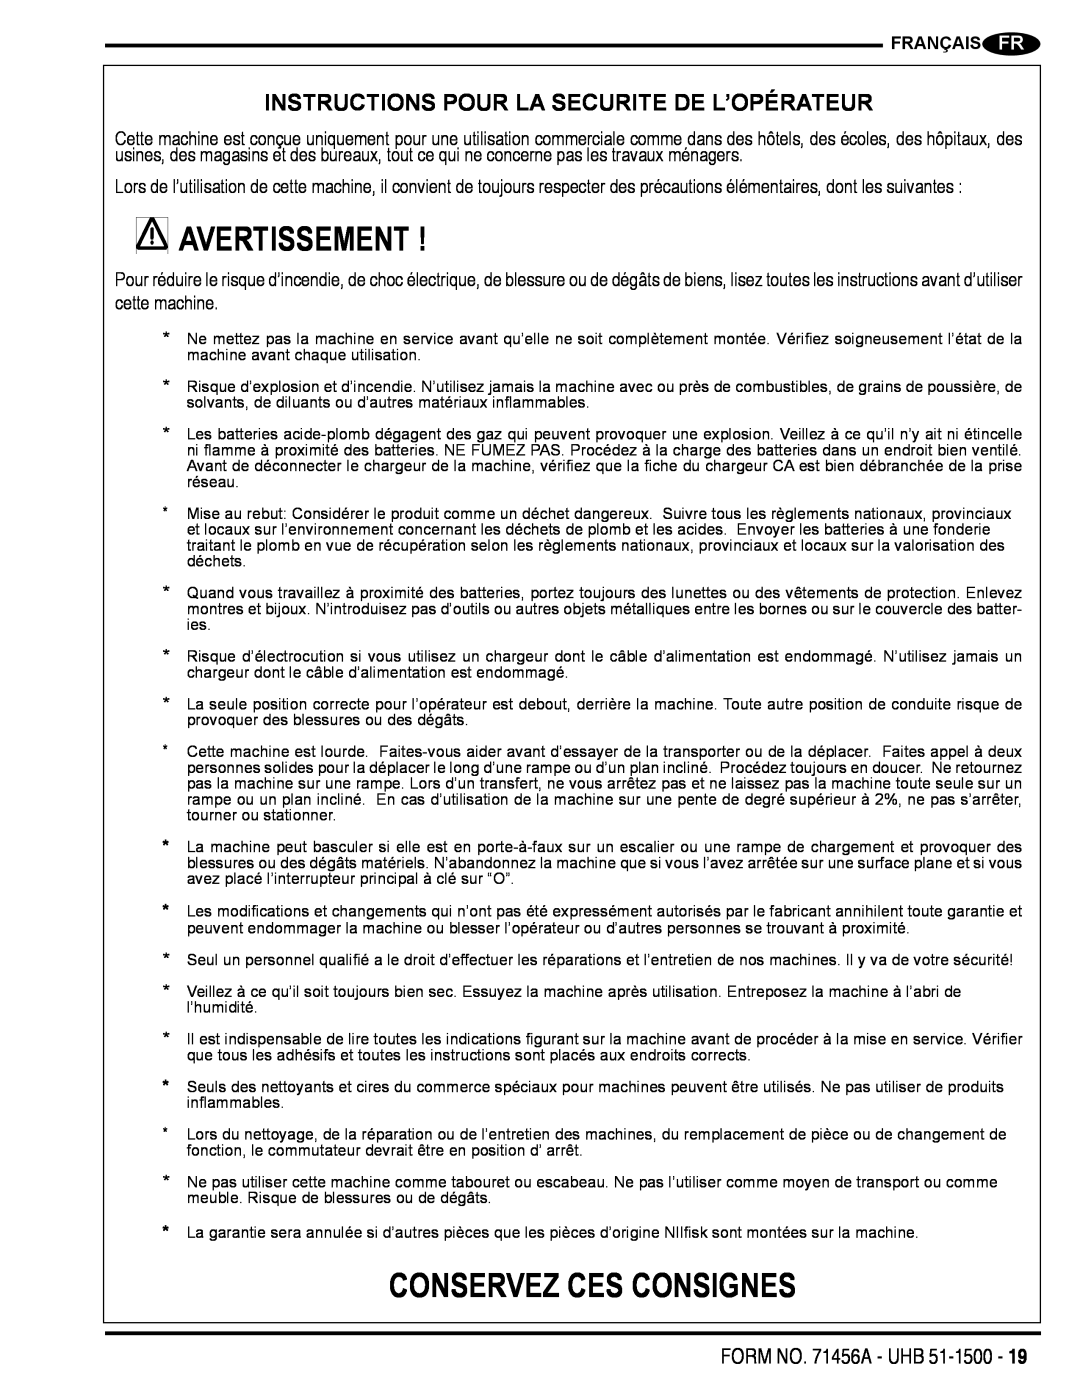 Nilfisk-Advance America 01610A manual Avertissement, Conservez Ces Consignes, Instructions Pour La Securite De L’Opérateur 